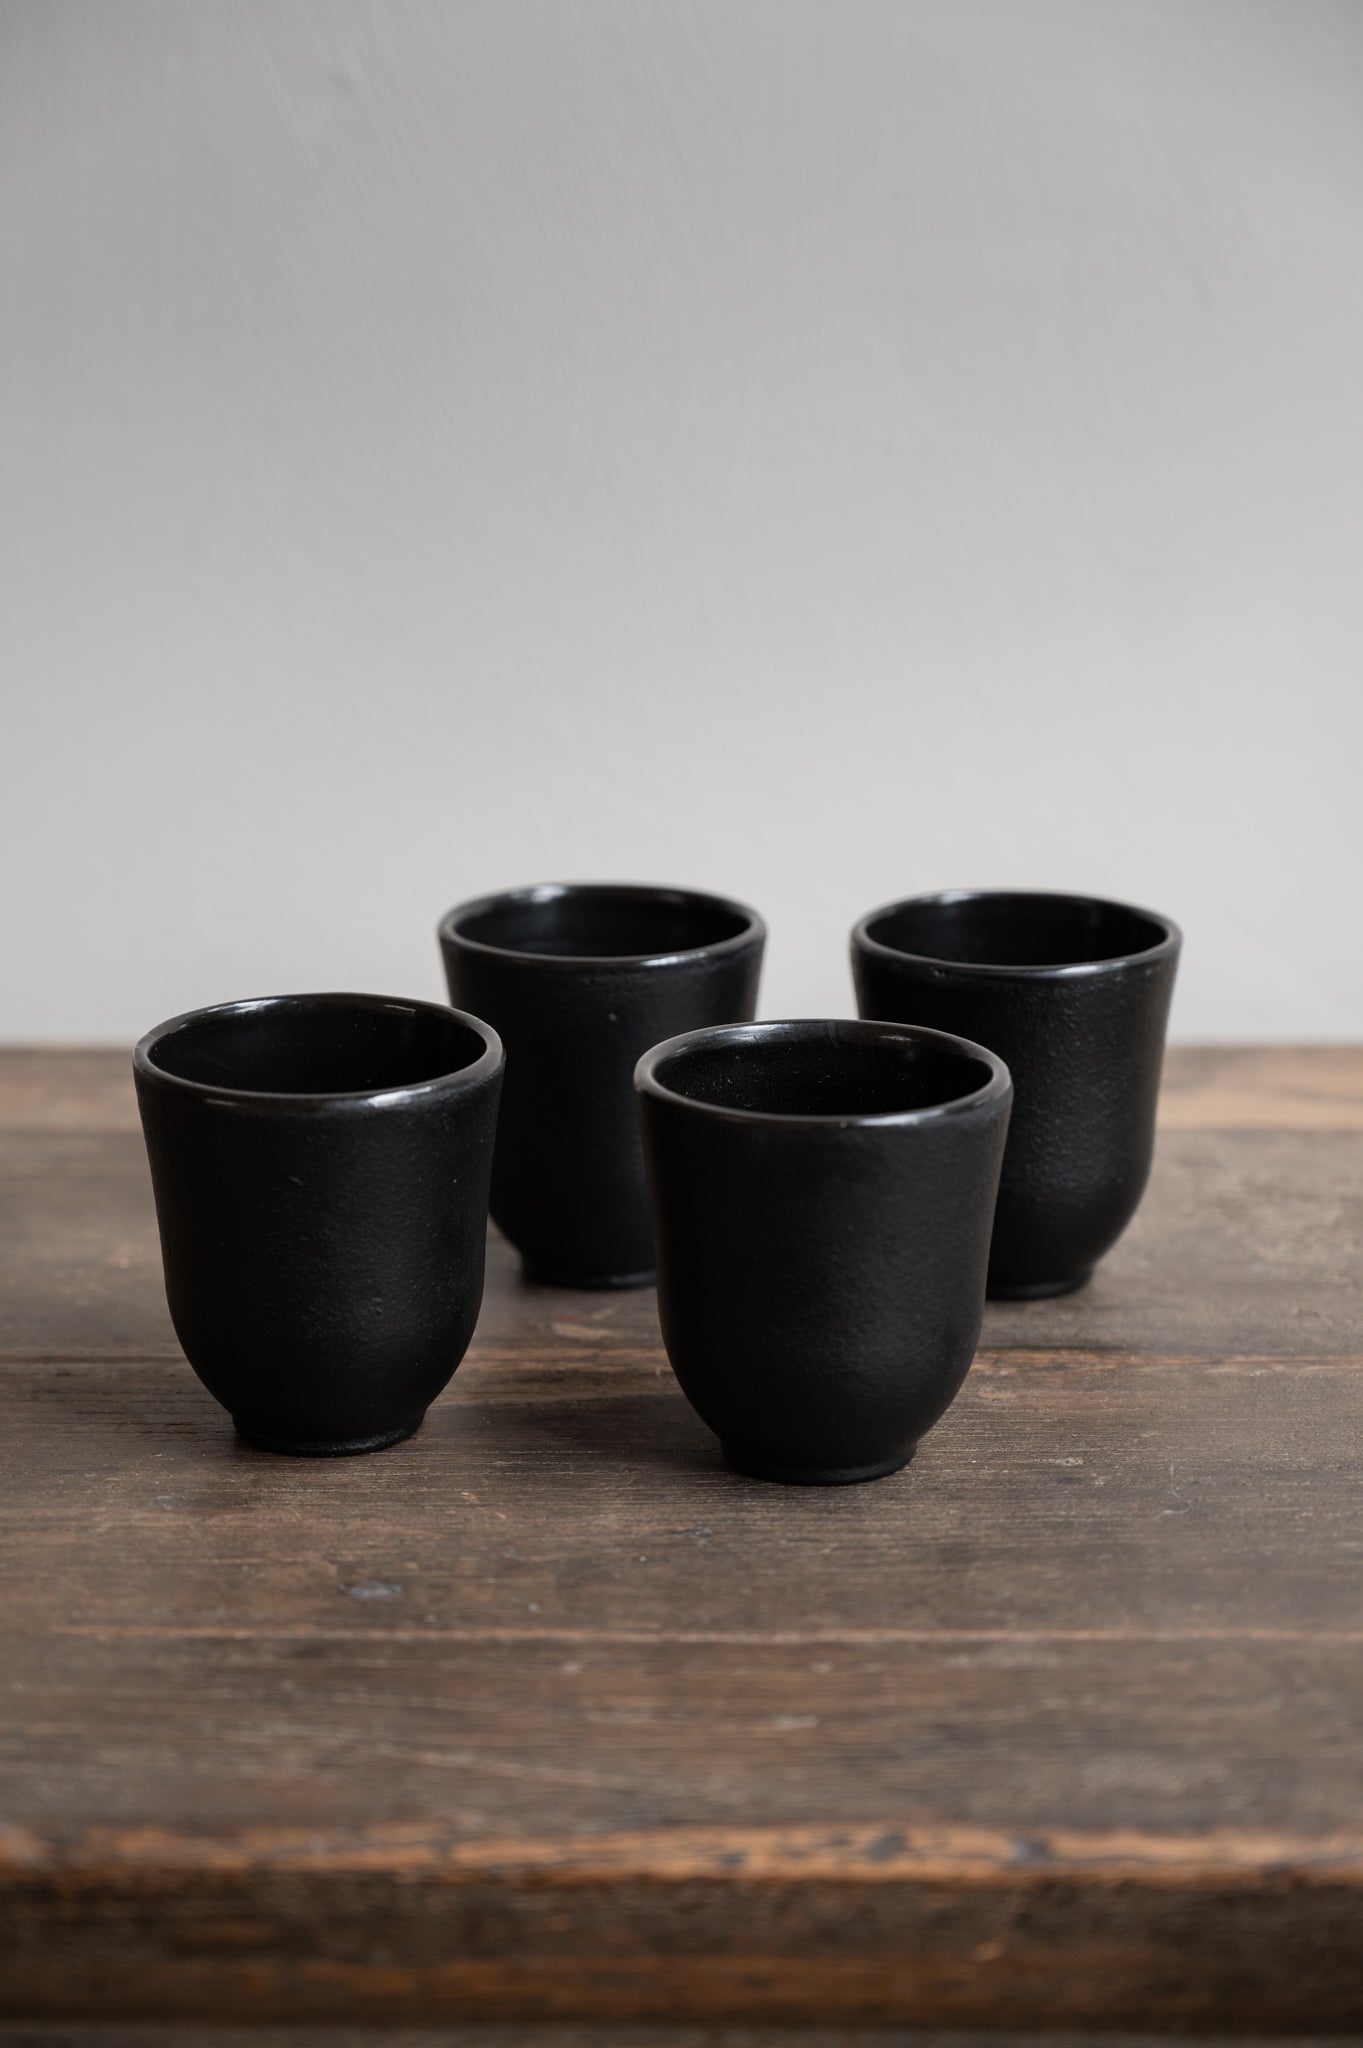 Inku Teacups (set of 4) by Serax in black.